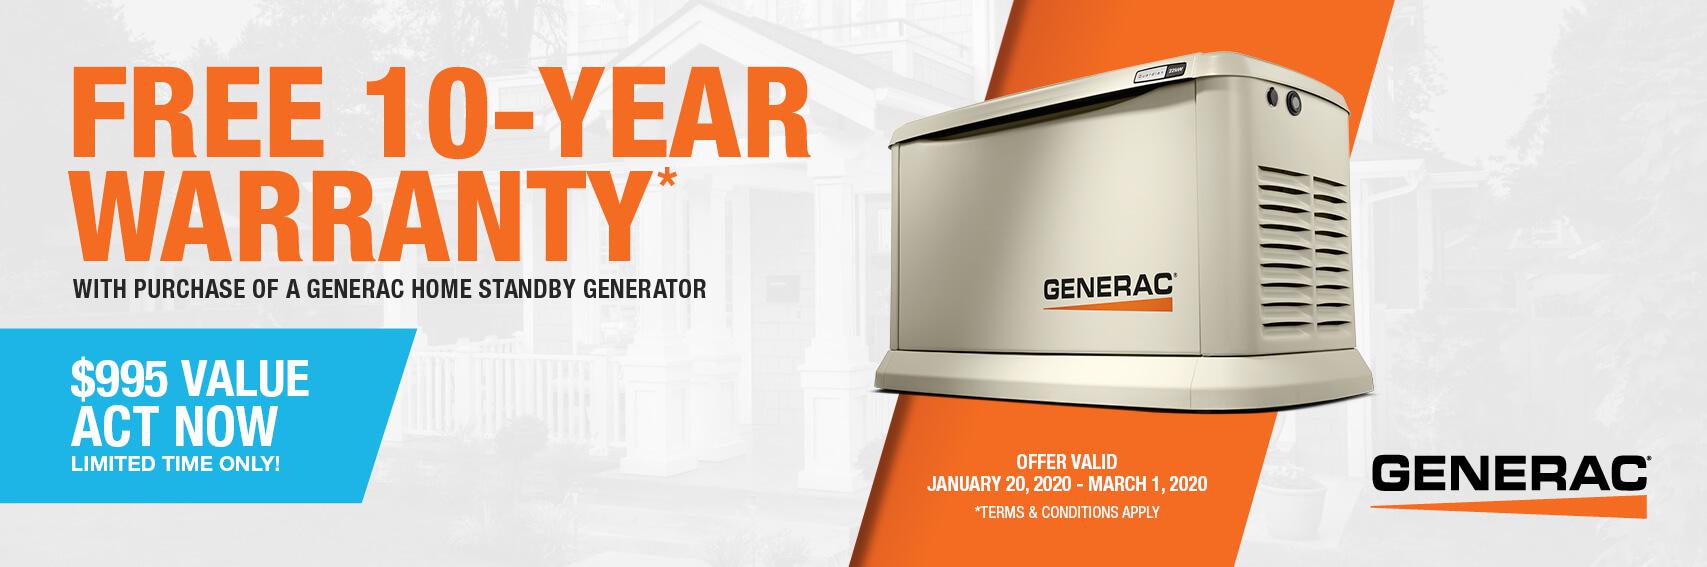 Homestandby Generator Deal | Warranty Offer | Generac Dealer | Knightstown, IN